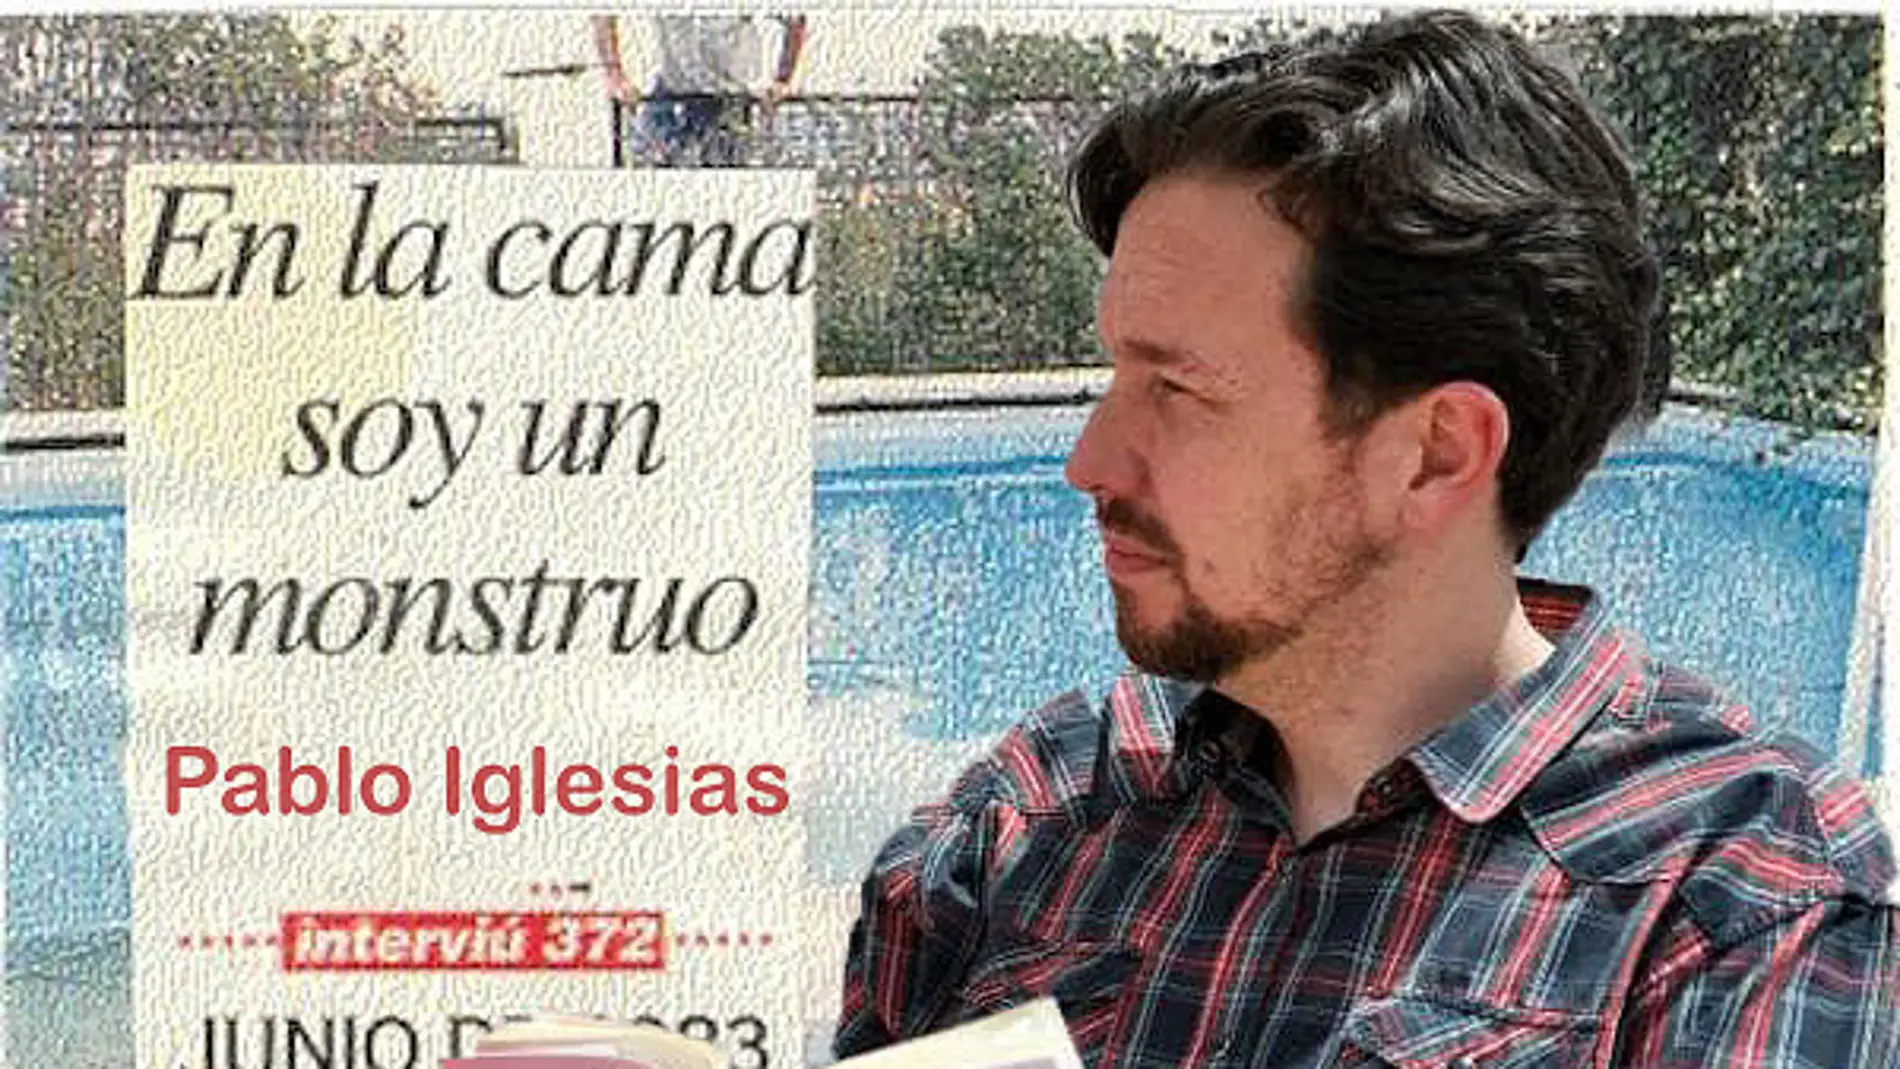 Pablo Iglesias sustituye al Fary (humor)